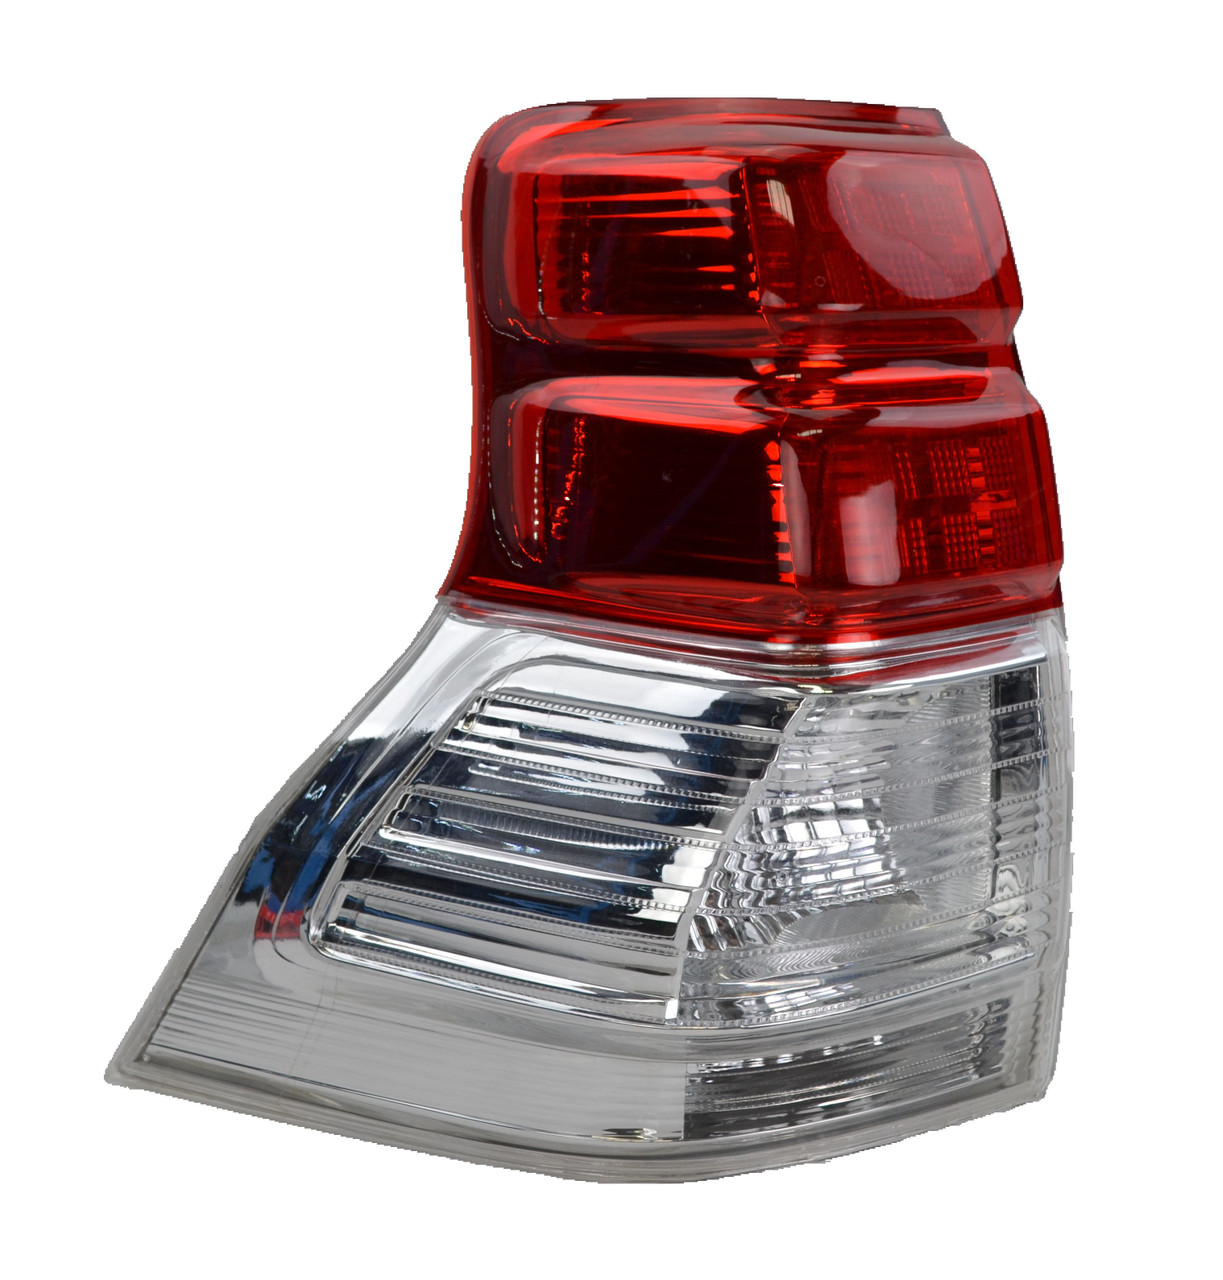 Tail light for Toyota Landcruiser Prado 150 08/09-08/13 New Left Rear Lamp 10 11 12